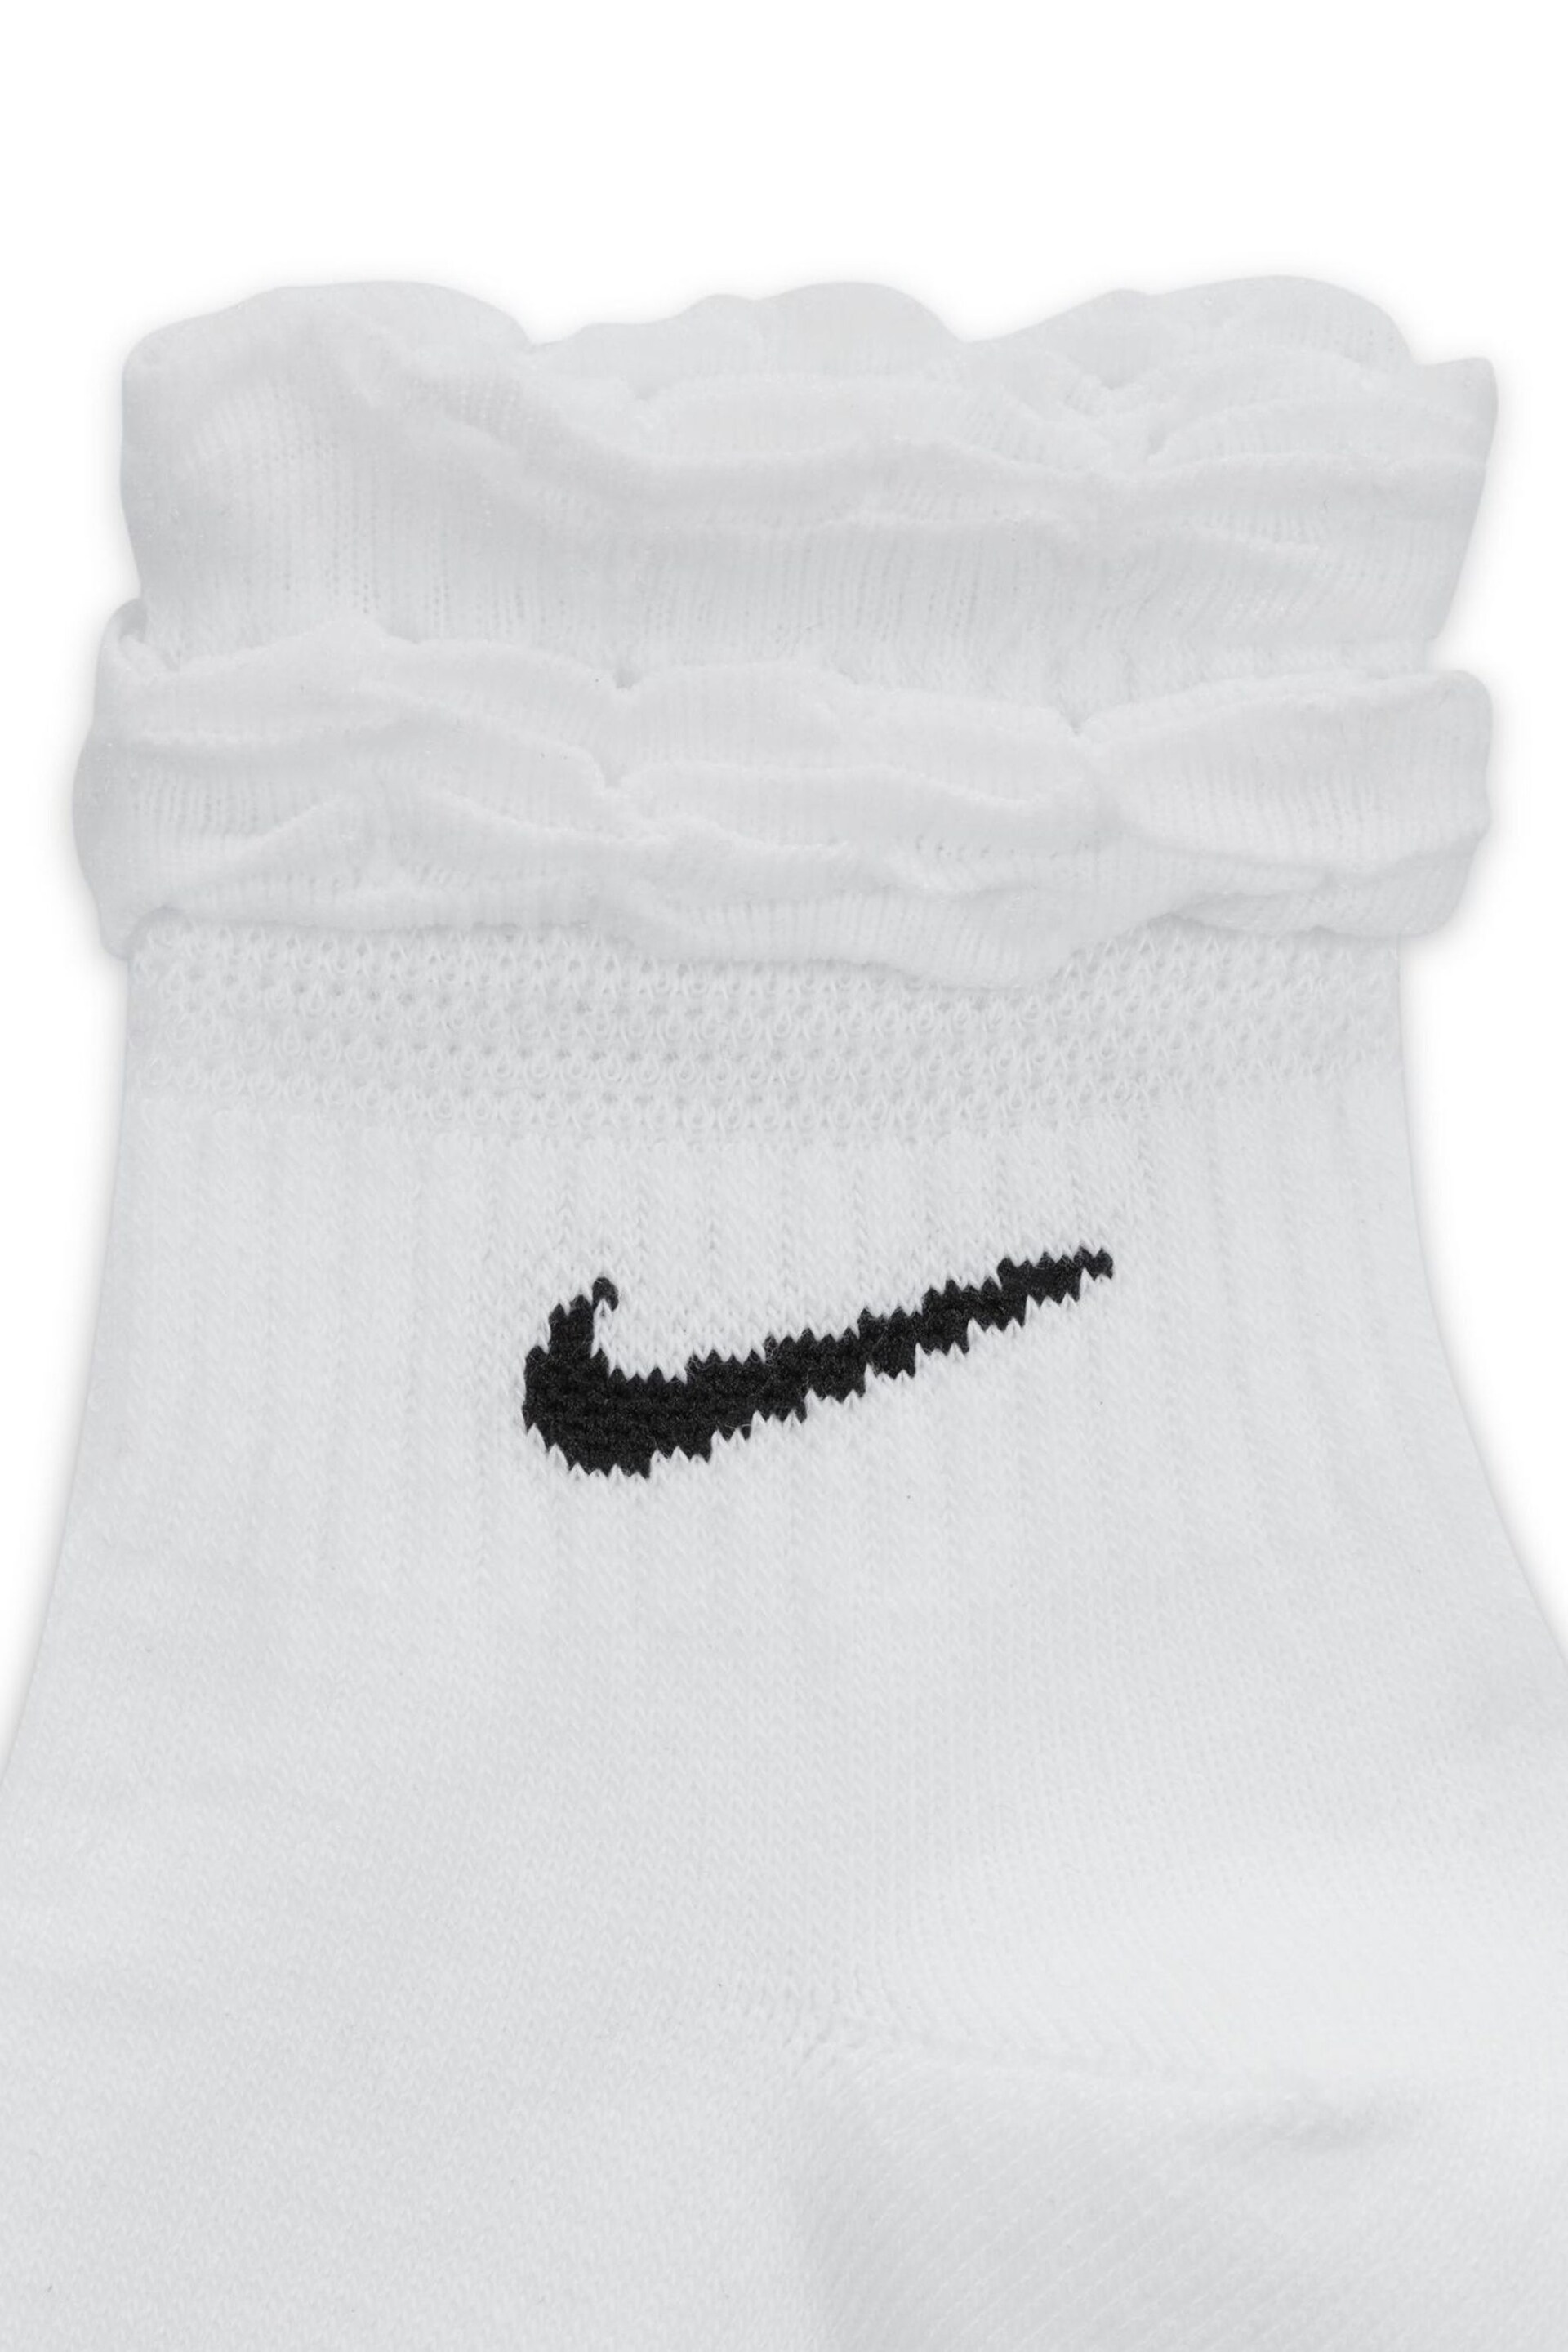 Nike White Everyday Ruffle Ankle Socks - Image 4 of 4